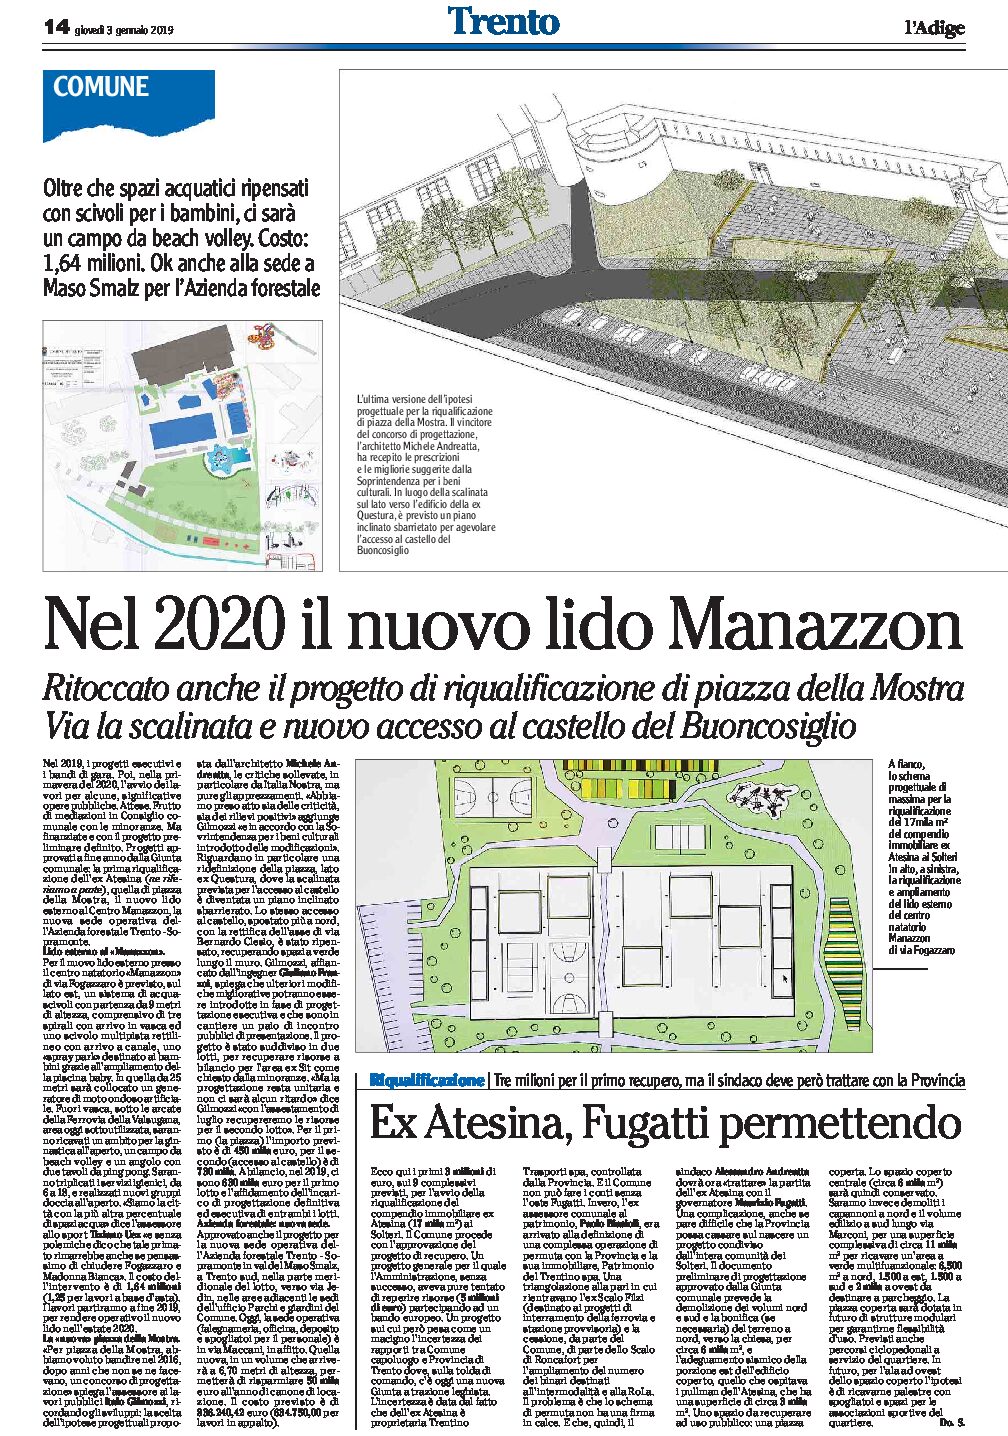 Trento, riqualificazione: piazza Mostra ritoccato il progetto, nuovo lido Manazzon, ex Atesina